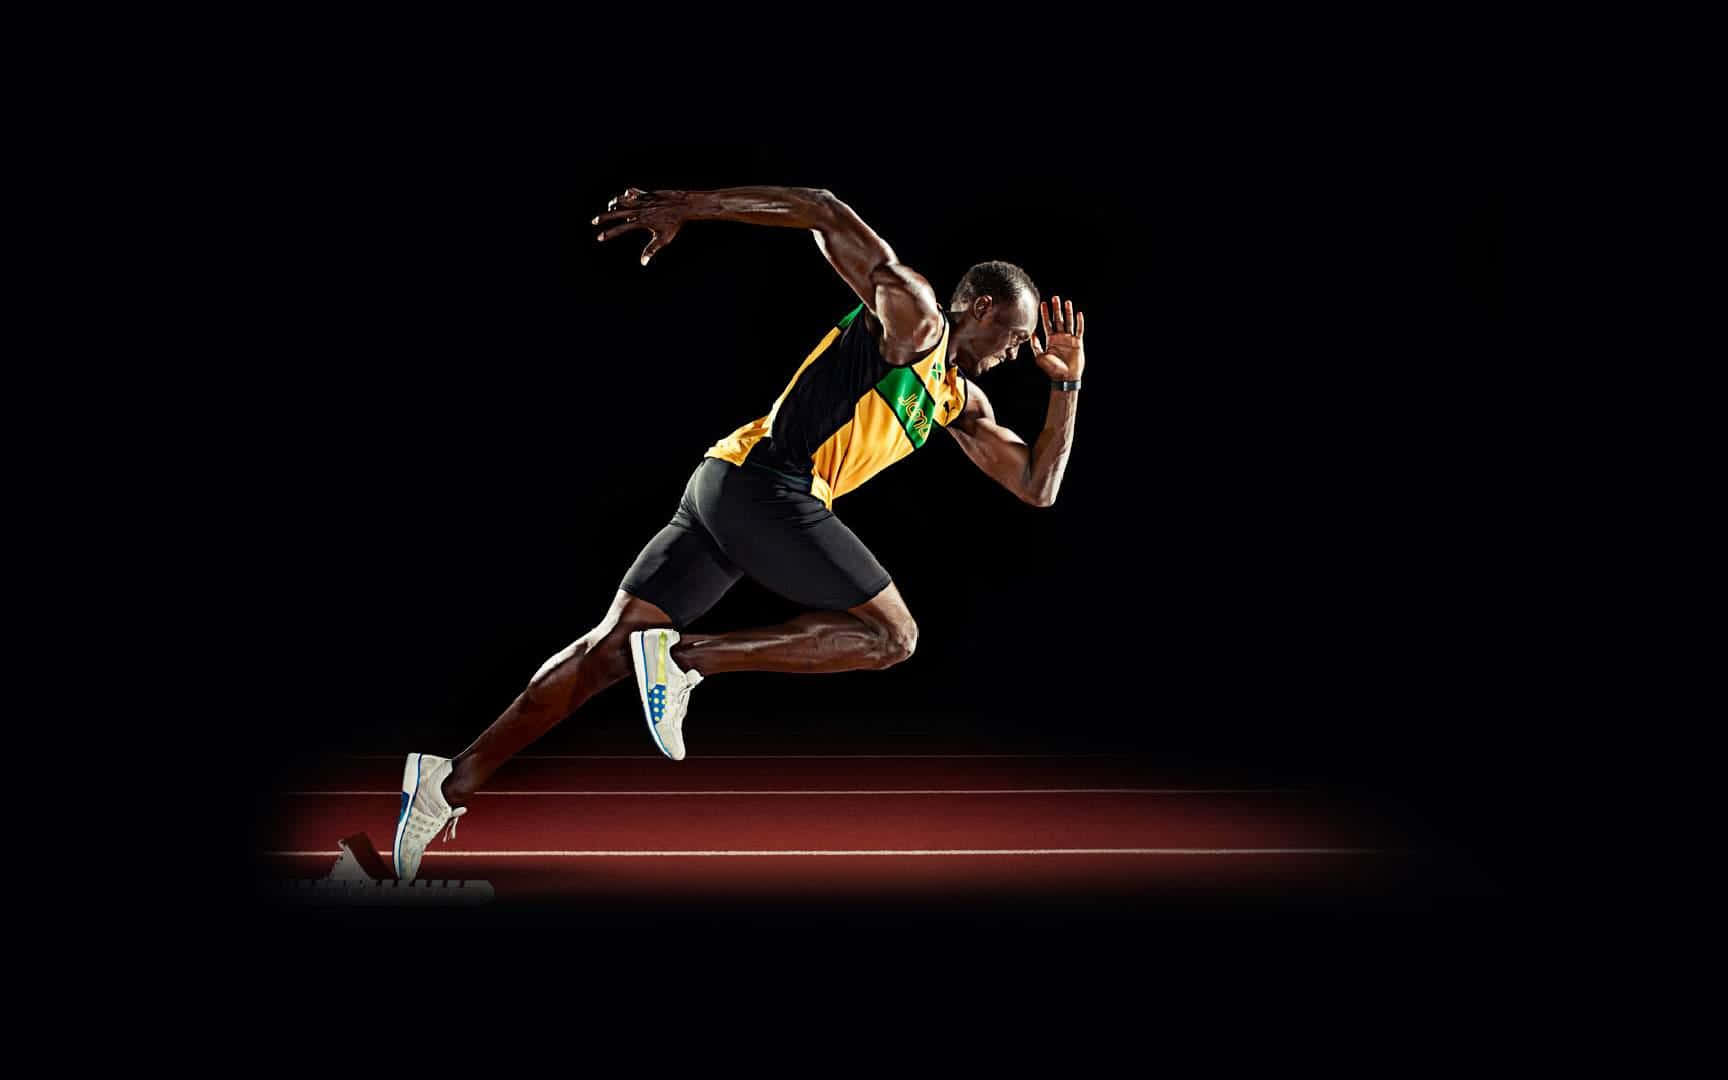 Ilustracióndel Atleta Jamaiquino Usain Bolt Para Fondo De Pantalla En Computadora O Móvil. Fondo de pantalla